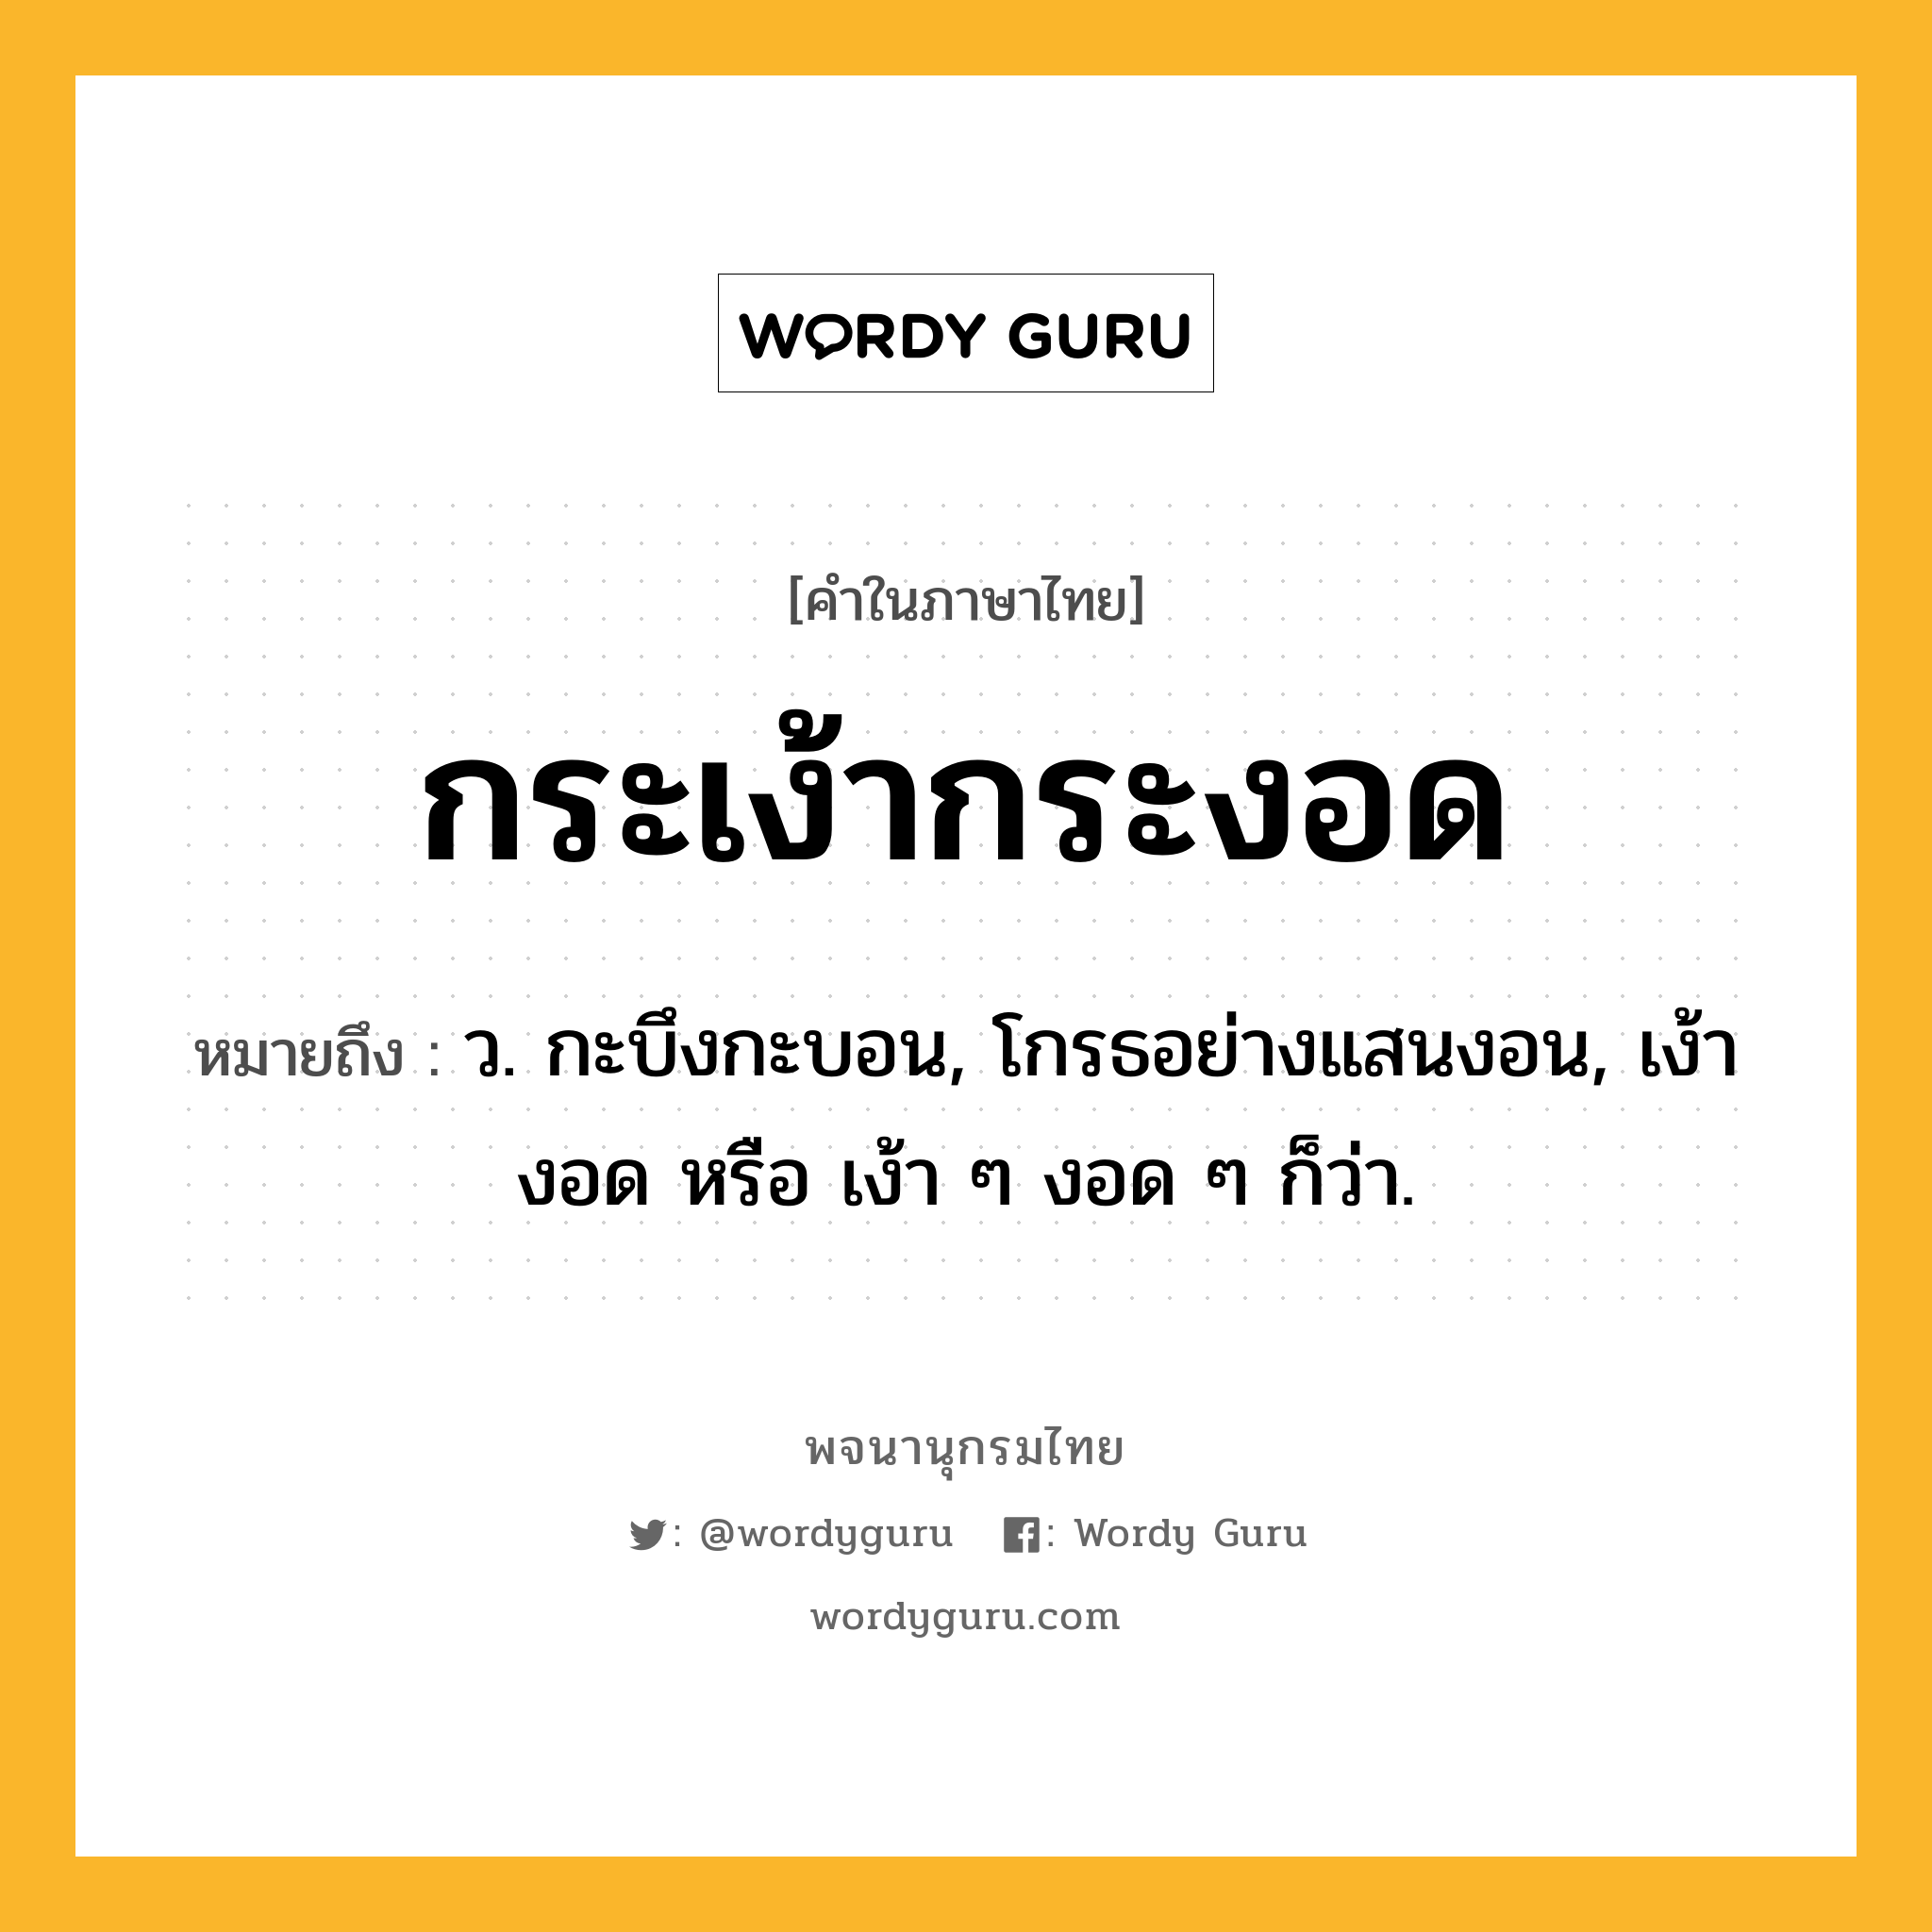 กระเง้ากระงอด หมายถึงอะไร?, คำในภาษาไทย กระเง้ากระงอด หมายถึง ว. กะบึงกะบอน, โกรธอย่างแสนงอน, เง้างอด หรือ เง้า ๆ งอด ๆ ก็ว่า.